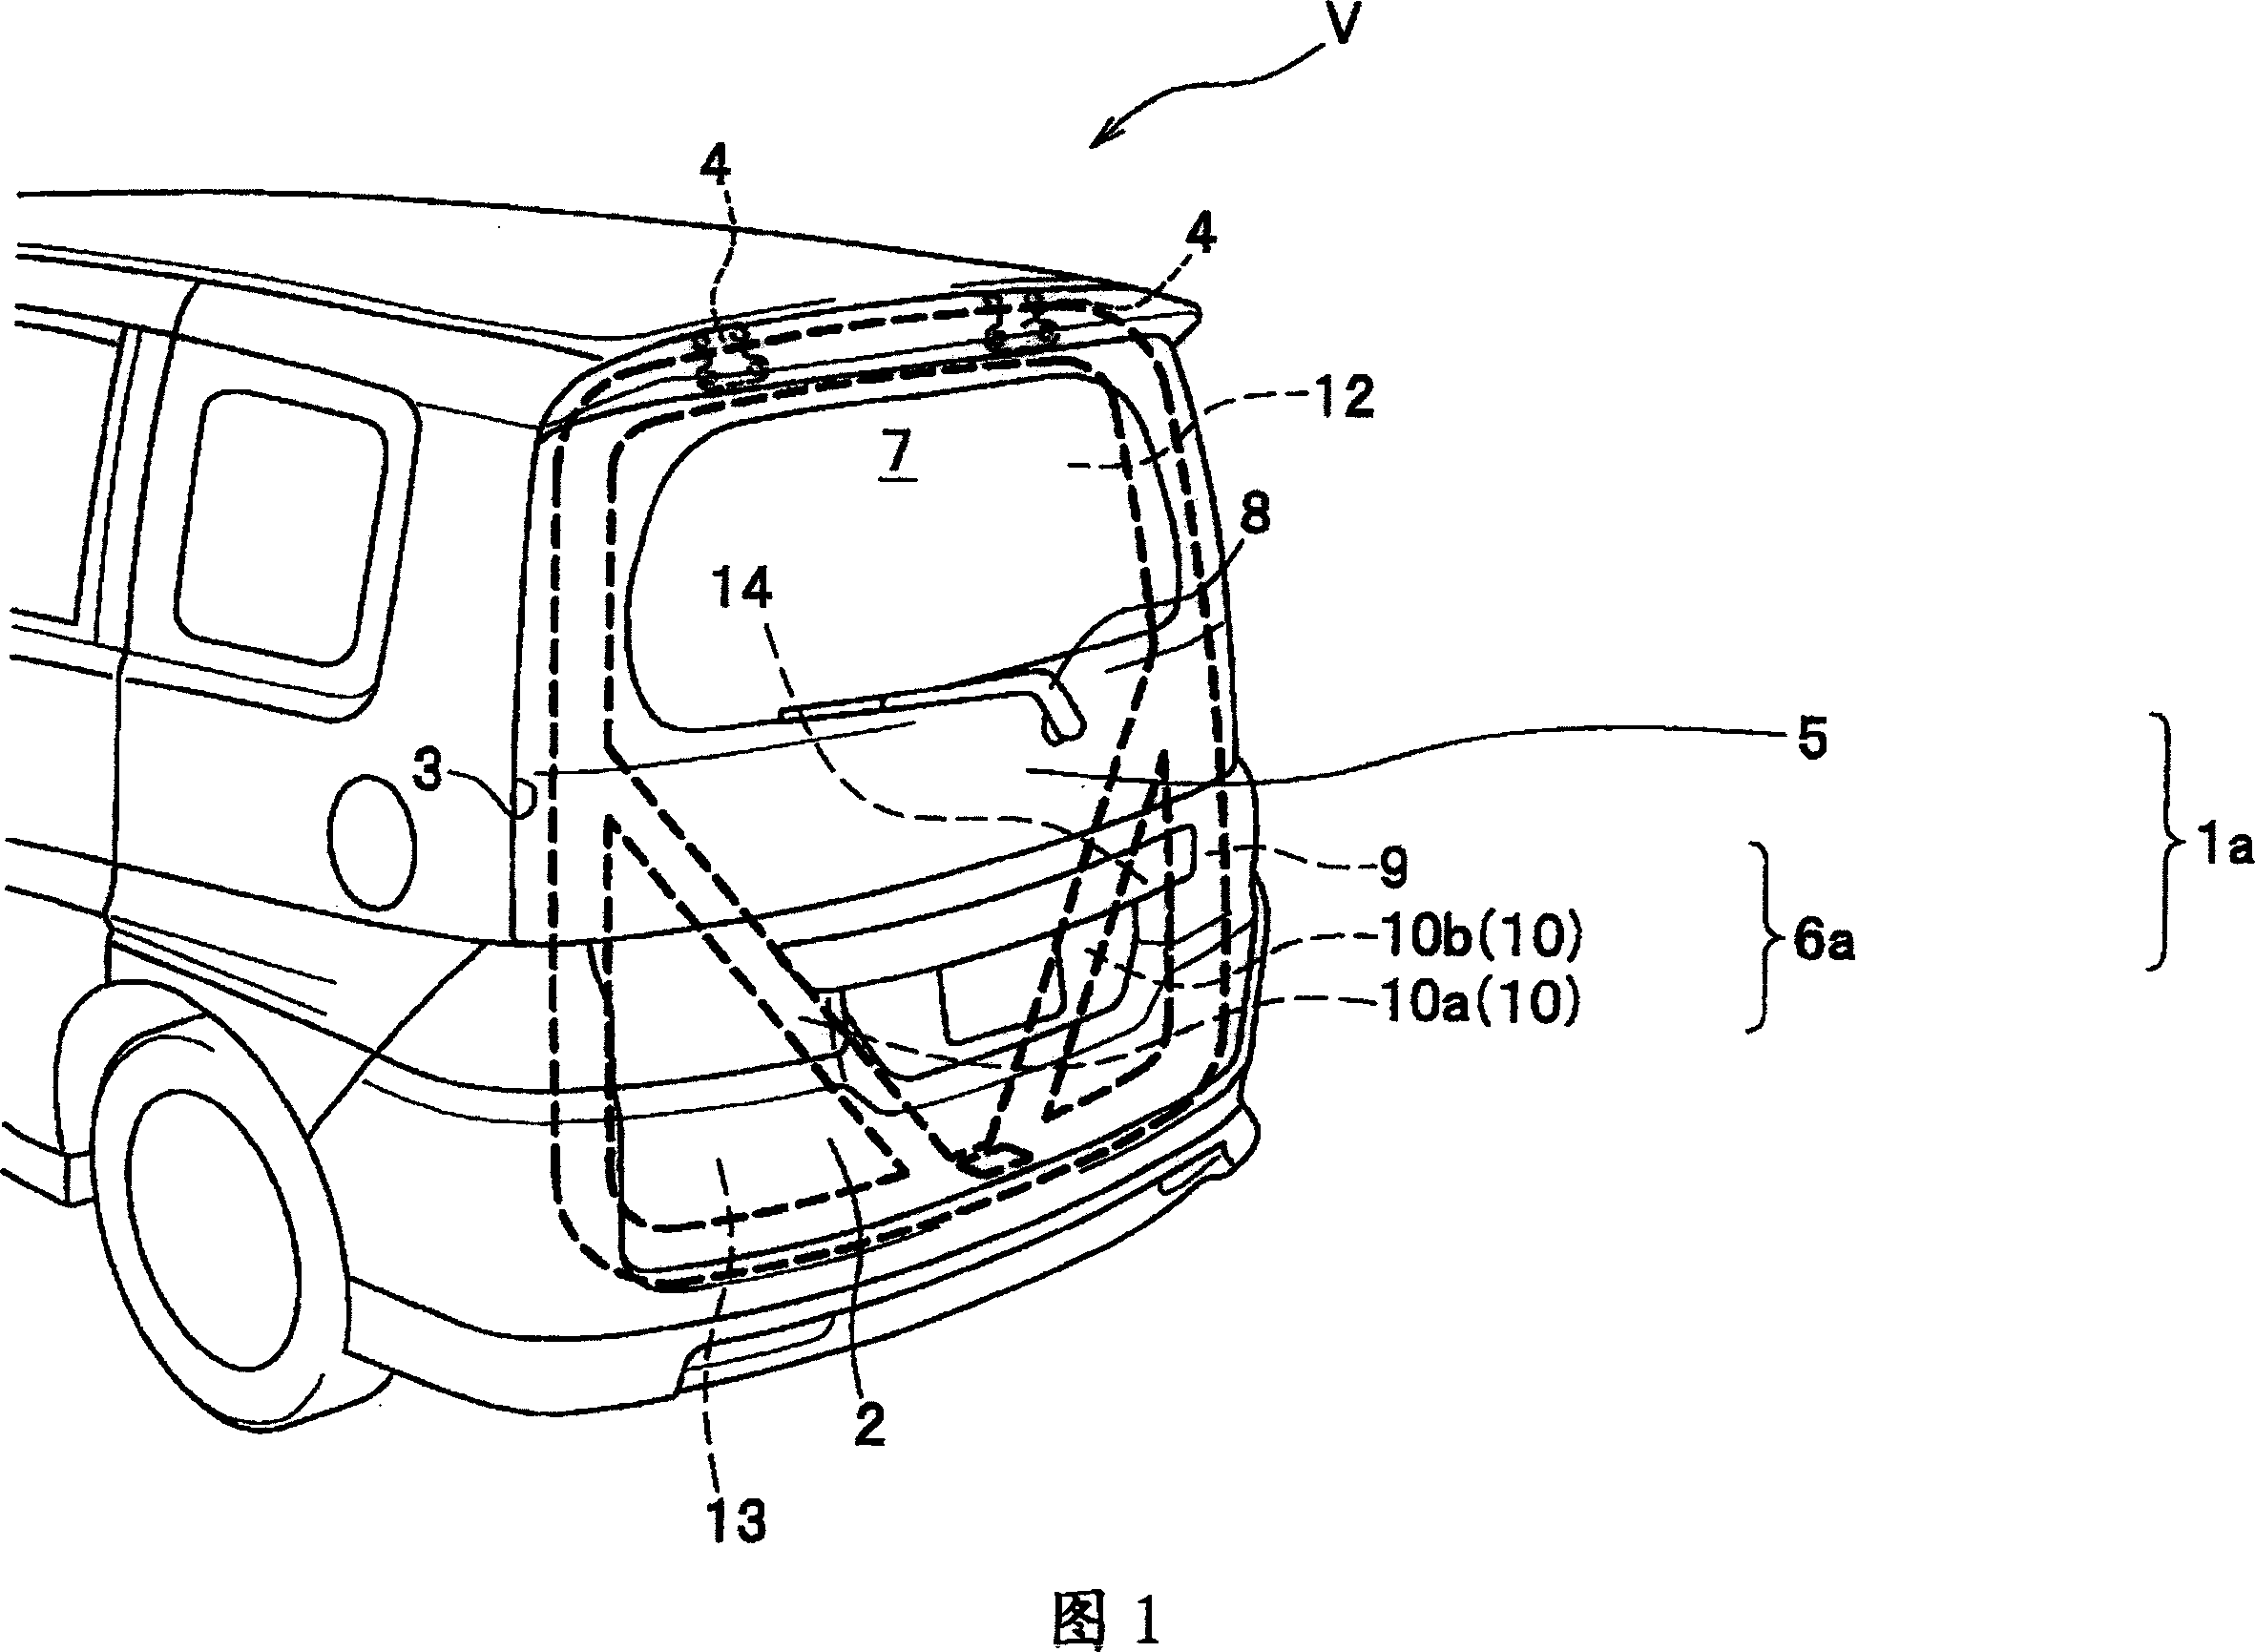 Hatchback door structure for vehicles